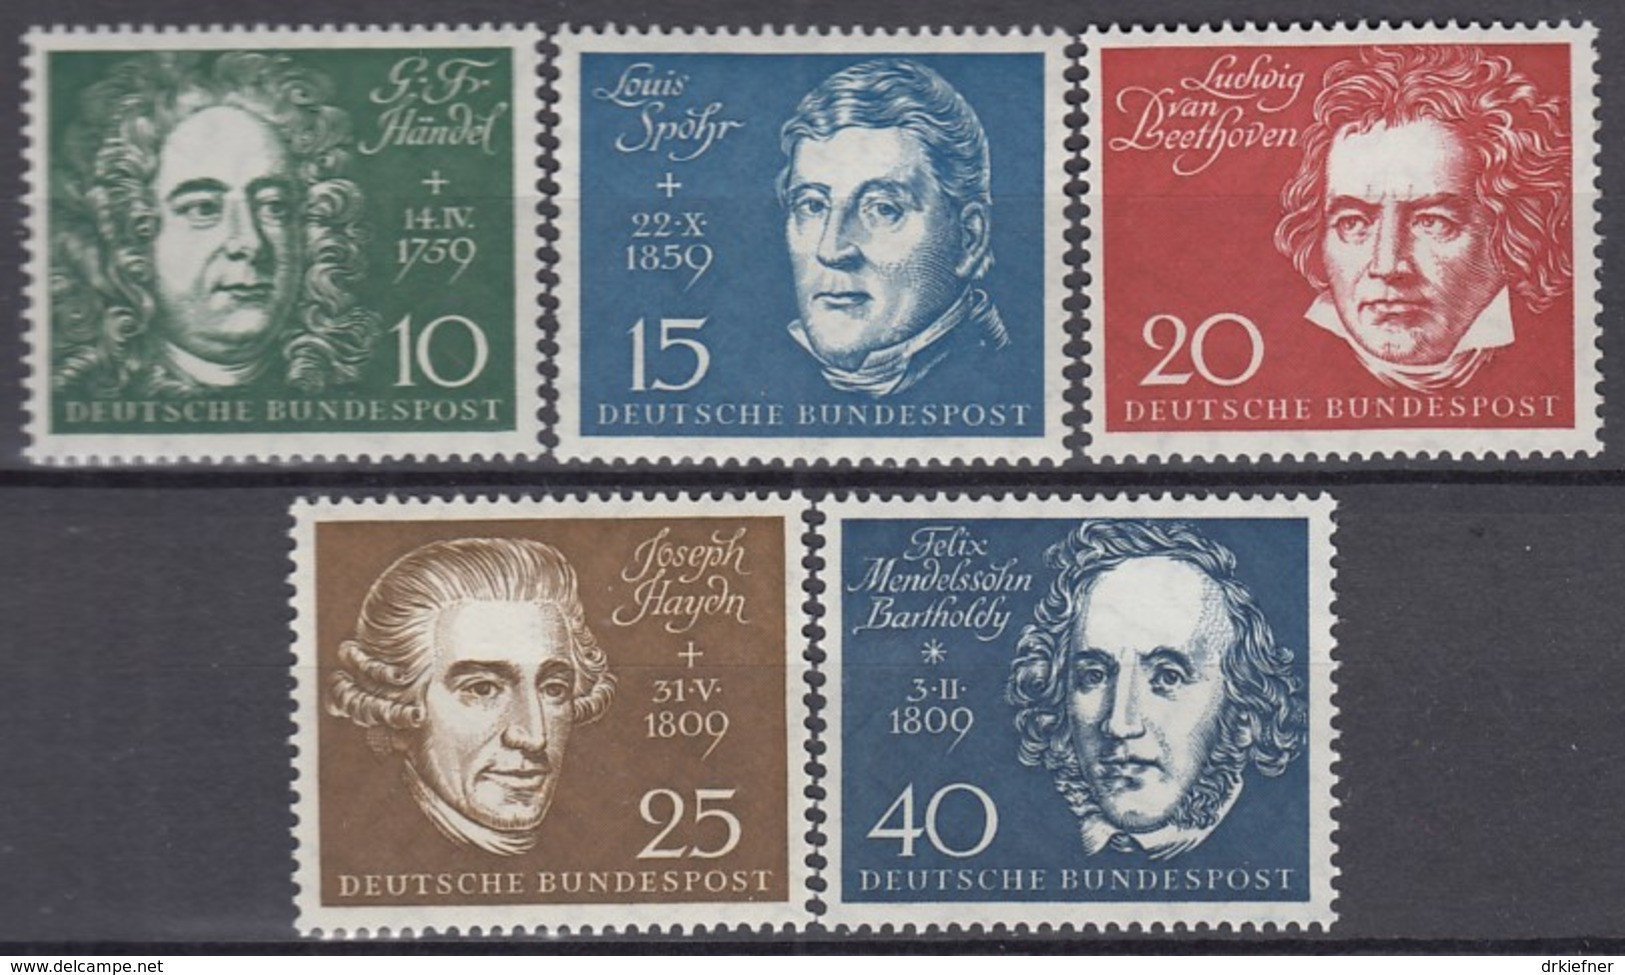 BRD 315-319, Postfrisch **, Beethoven-Block-Marken, 1959 - Unused Stamps